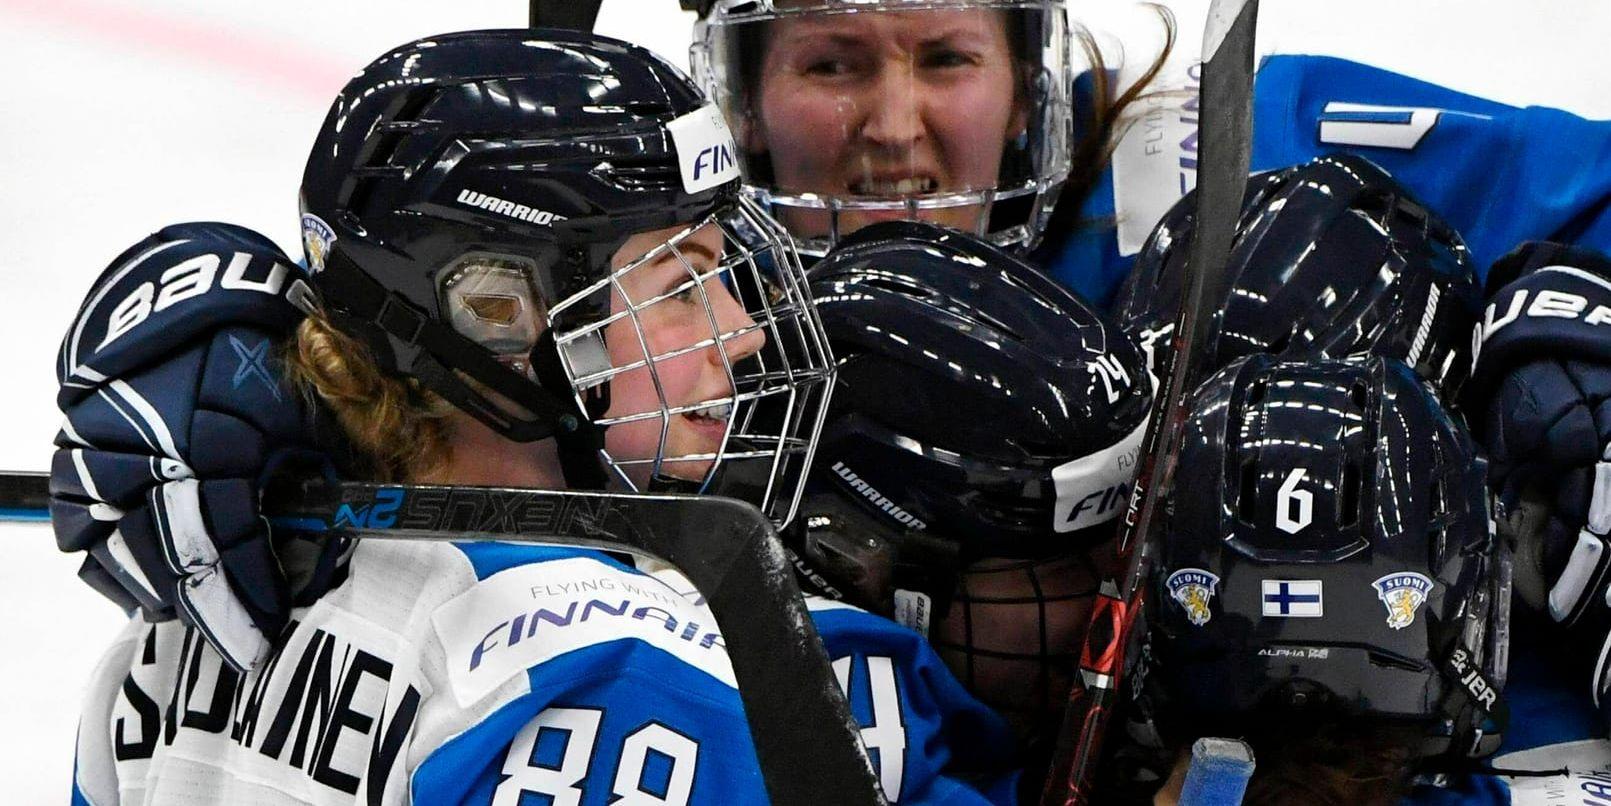 Finland jublar efter den historiska segern mot Kanada i ishockey-VM.